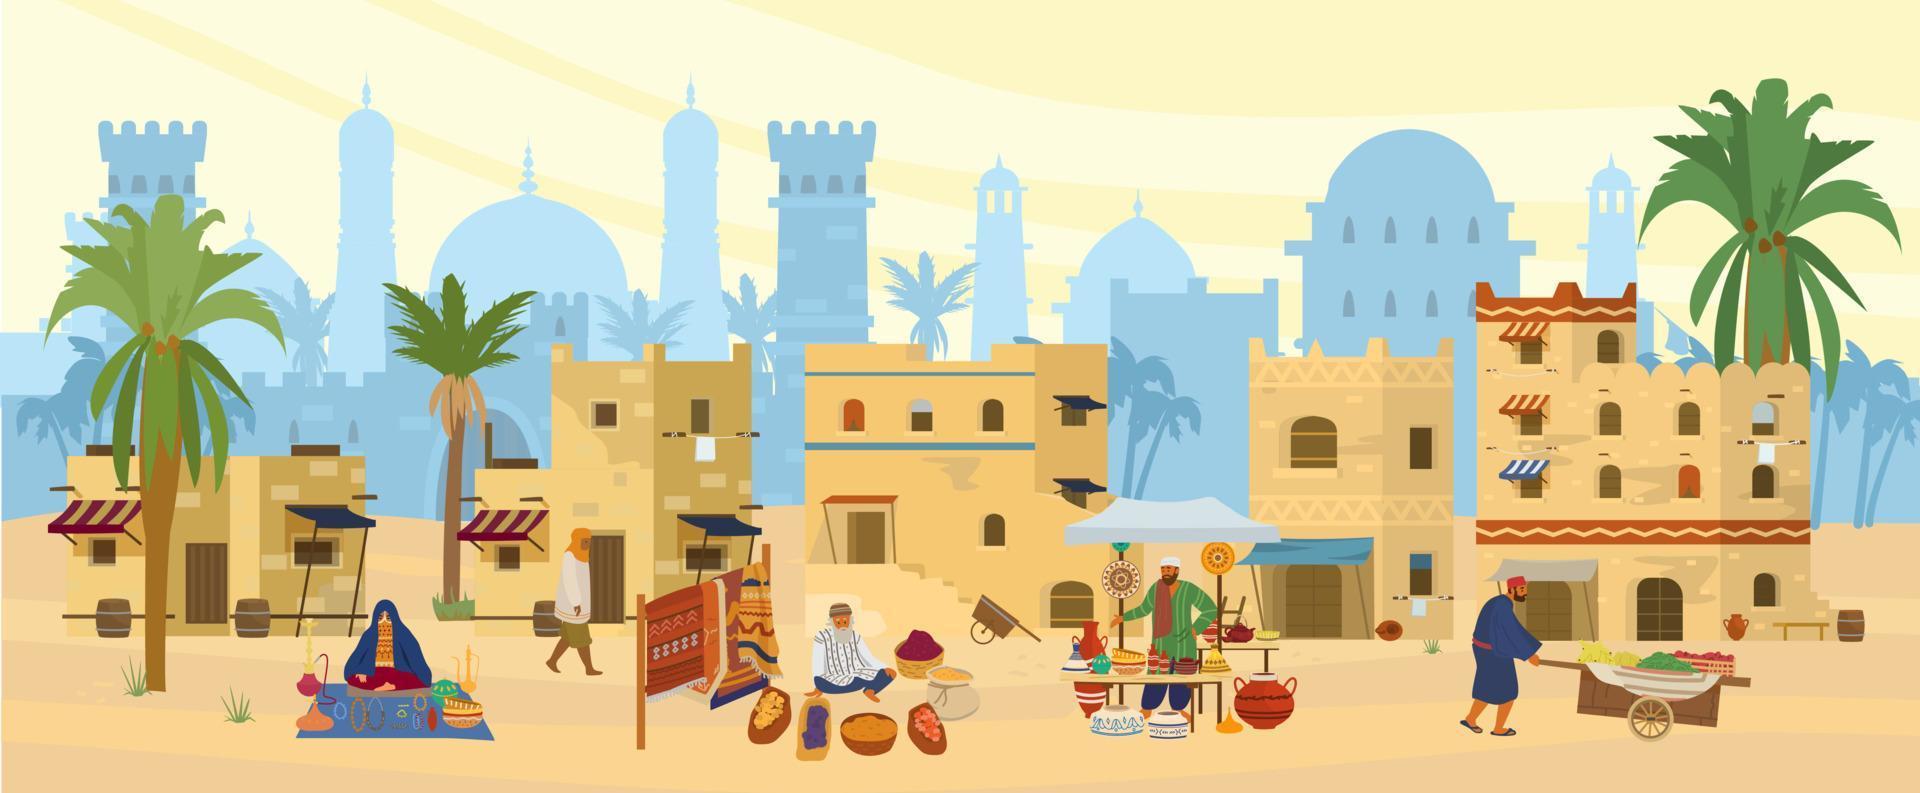 illustration vectorielle plate de la ville du moyen-orient. paysage désertique arabe avec des maisons et des gens traditionnels en briques de boue. bazar de rue avec tapis, céramiques, fruits, épices. architecture islamique. vecteur